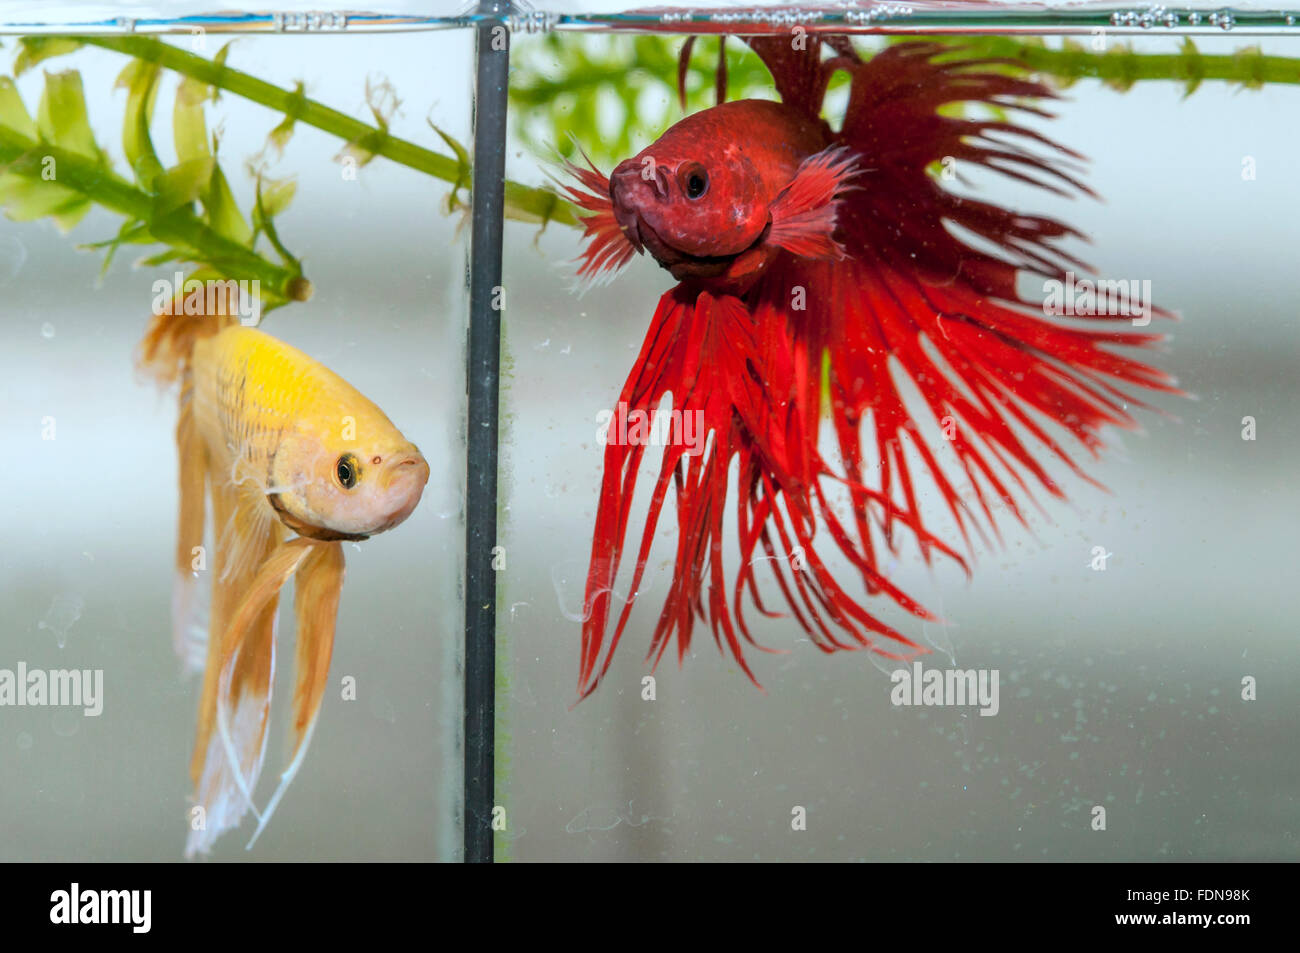 Two betta fish in aquarium Stock Photo